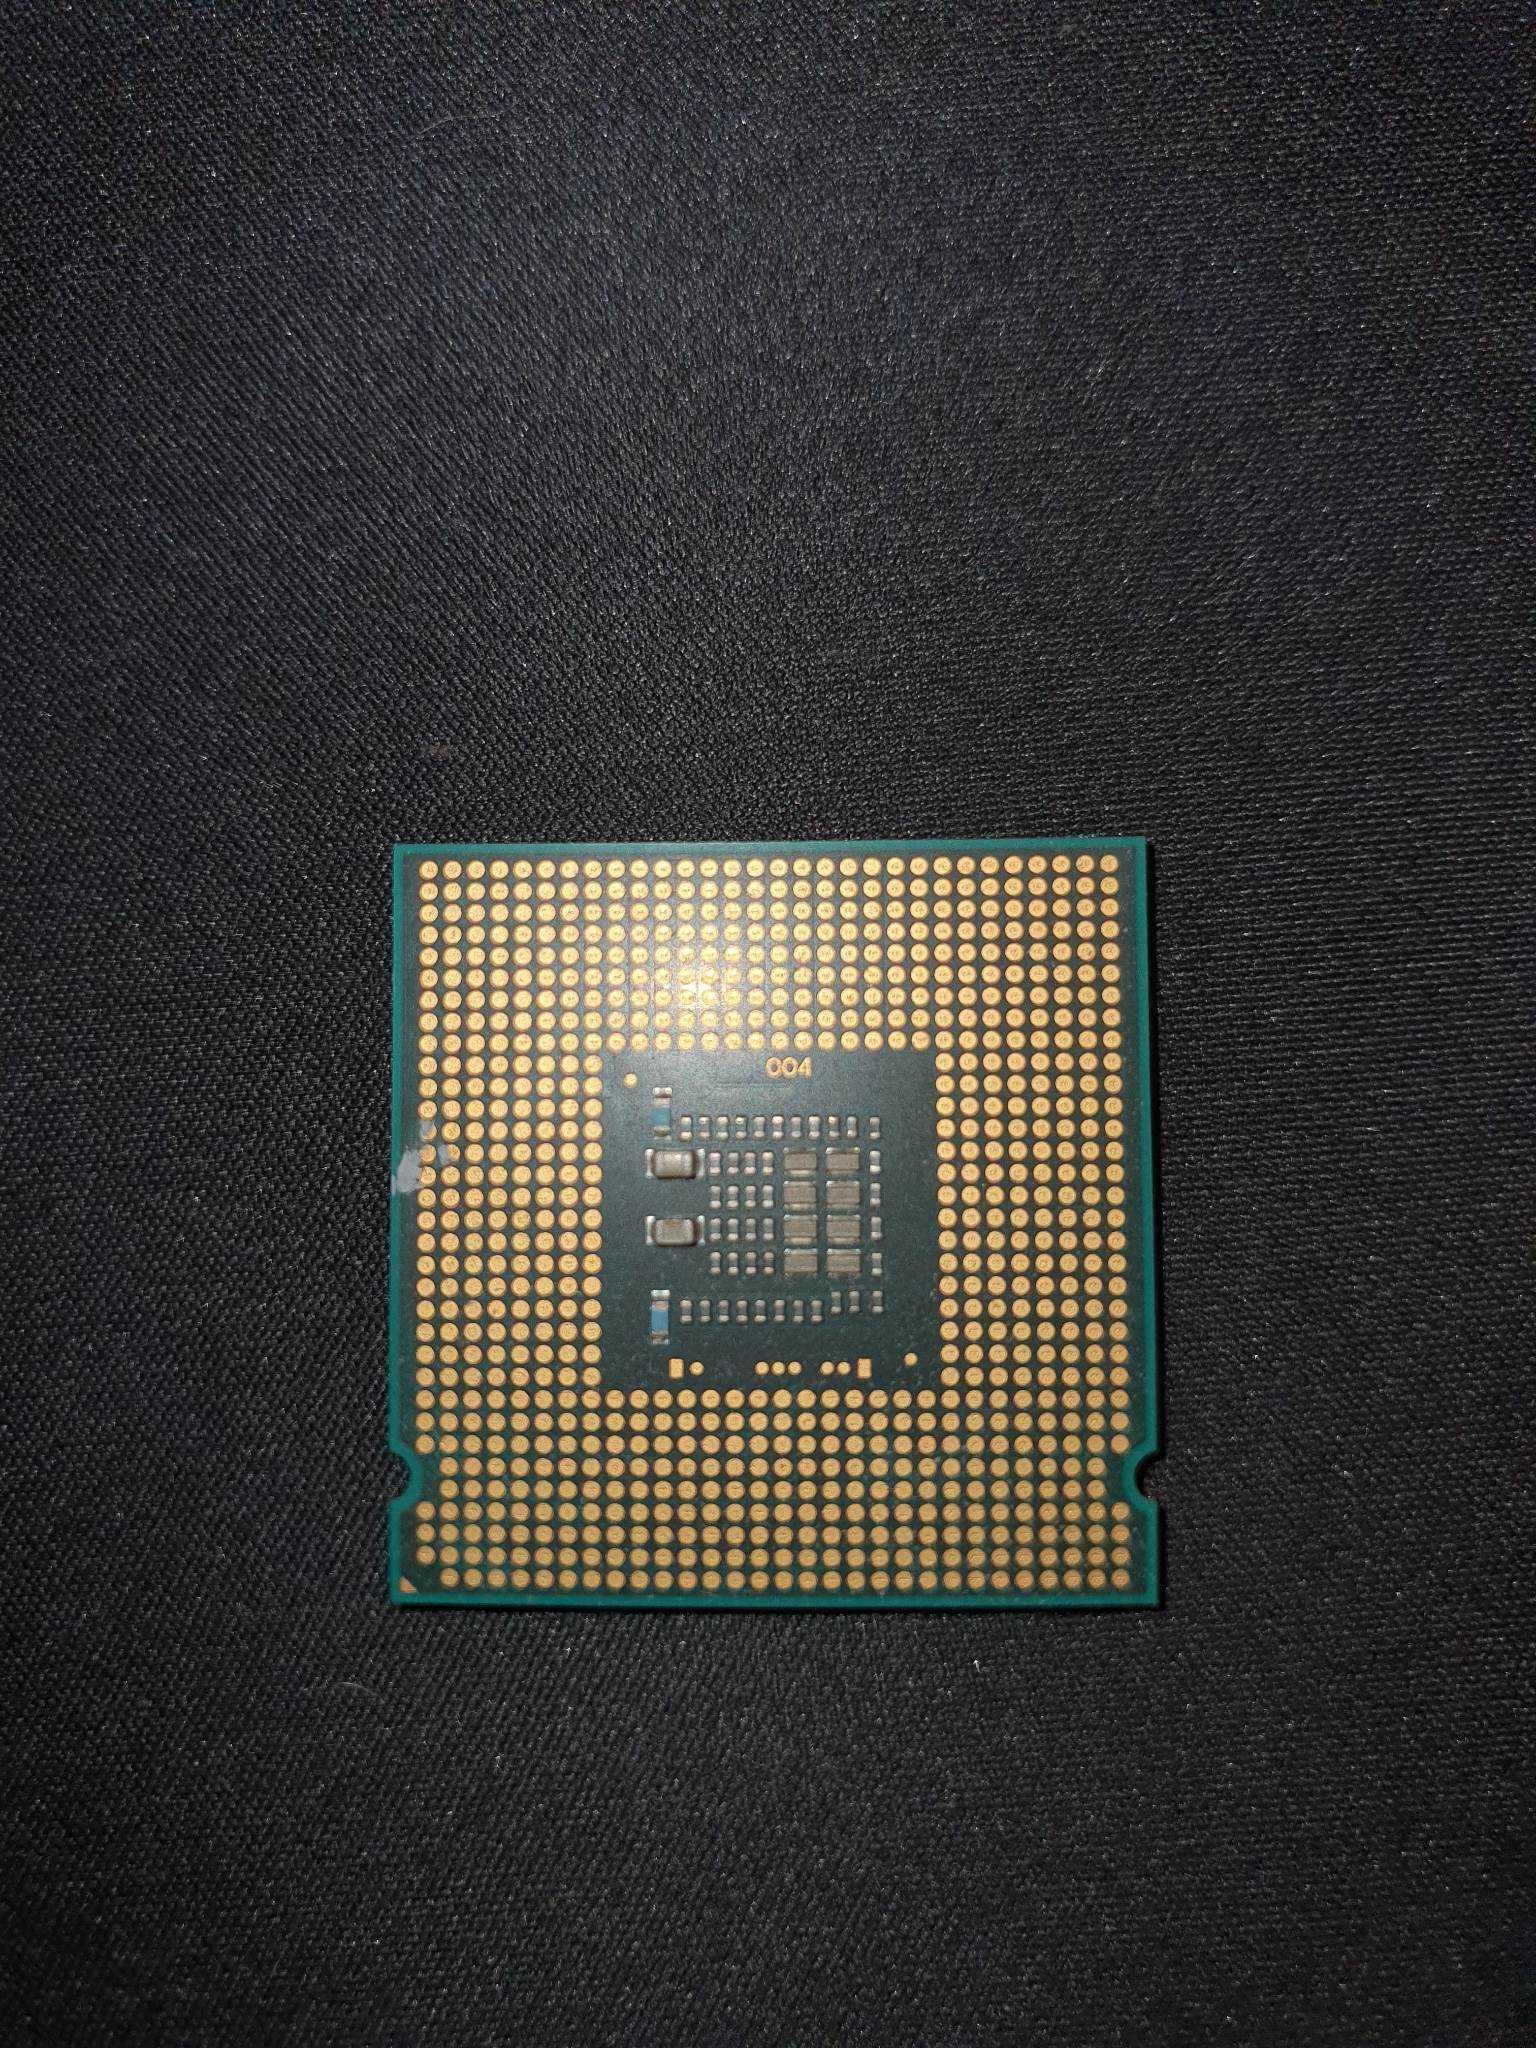 Procesor Intel Core i3 - 3220 3.3GHz + chłodzenie + Intel Core 2 duo